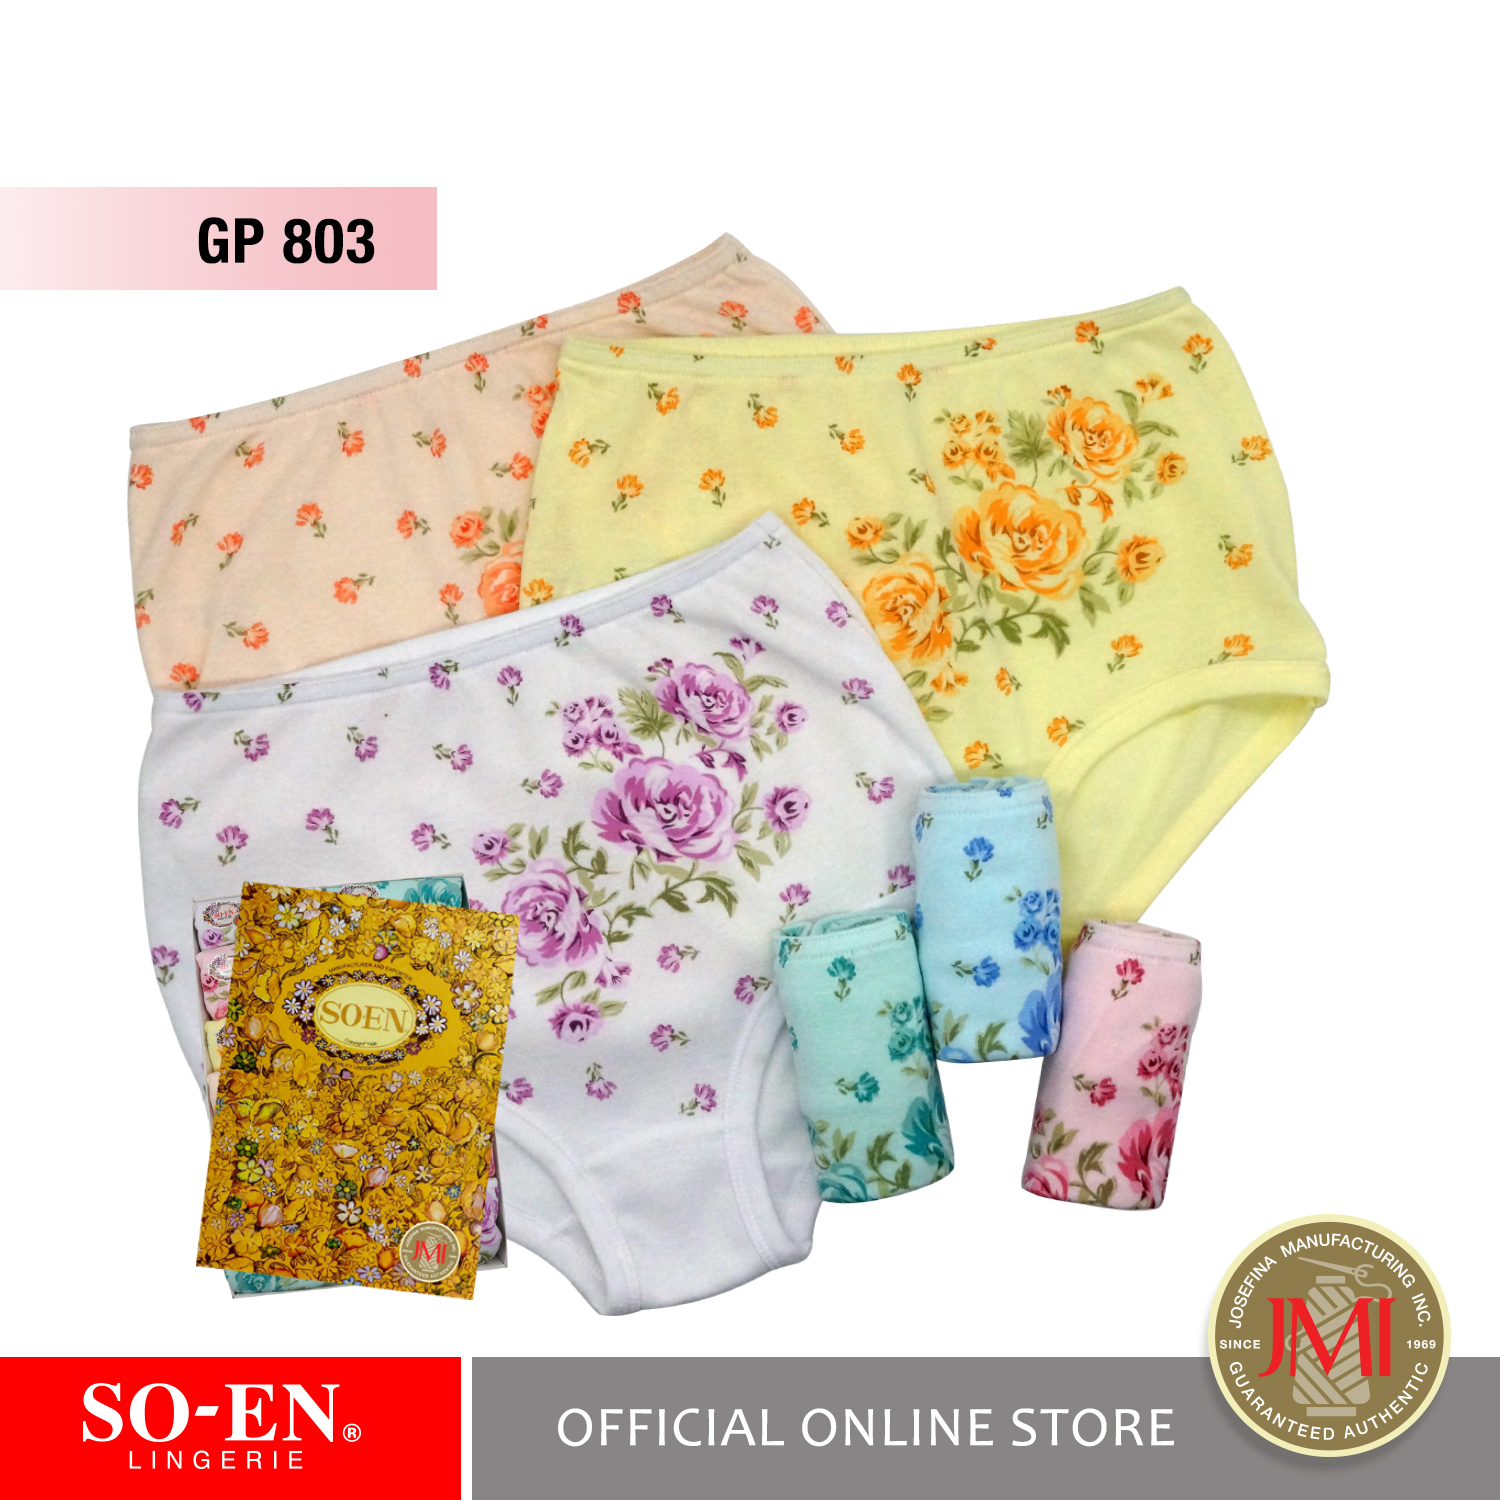 Original Soen Underwear, Women's Fashion, Maternity wear on Carousell